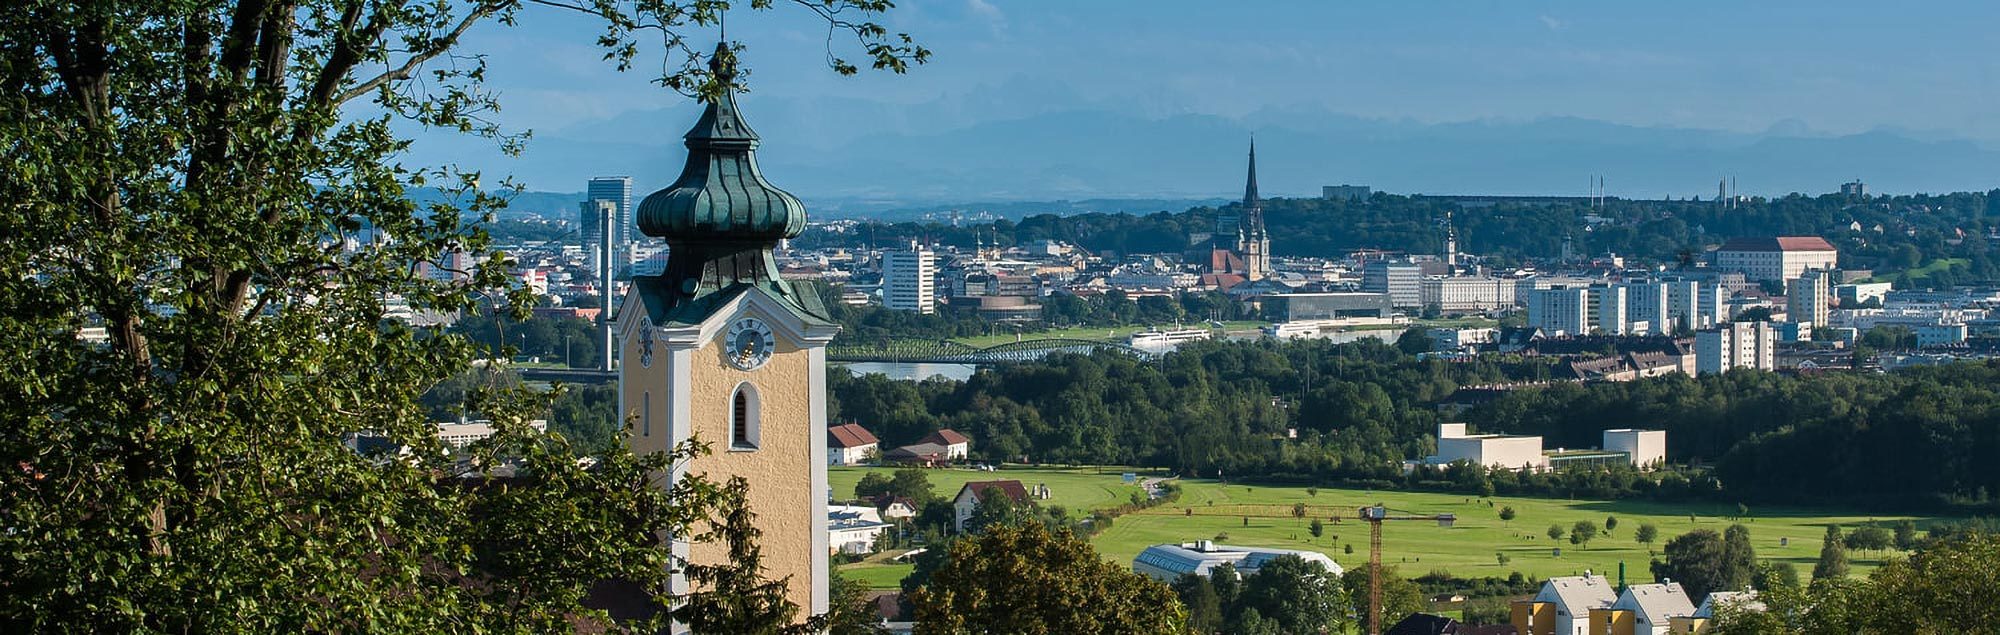 Blick auf Linz, im Vordergrund der Turm der Kirche St. Magdalena